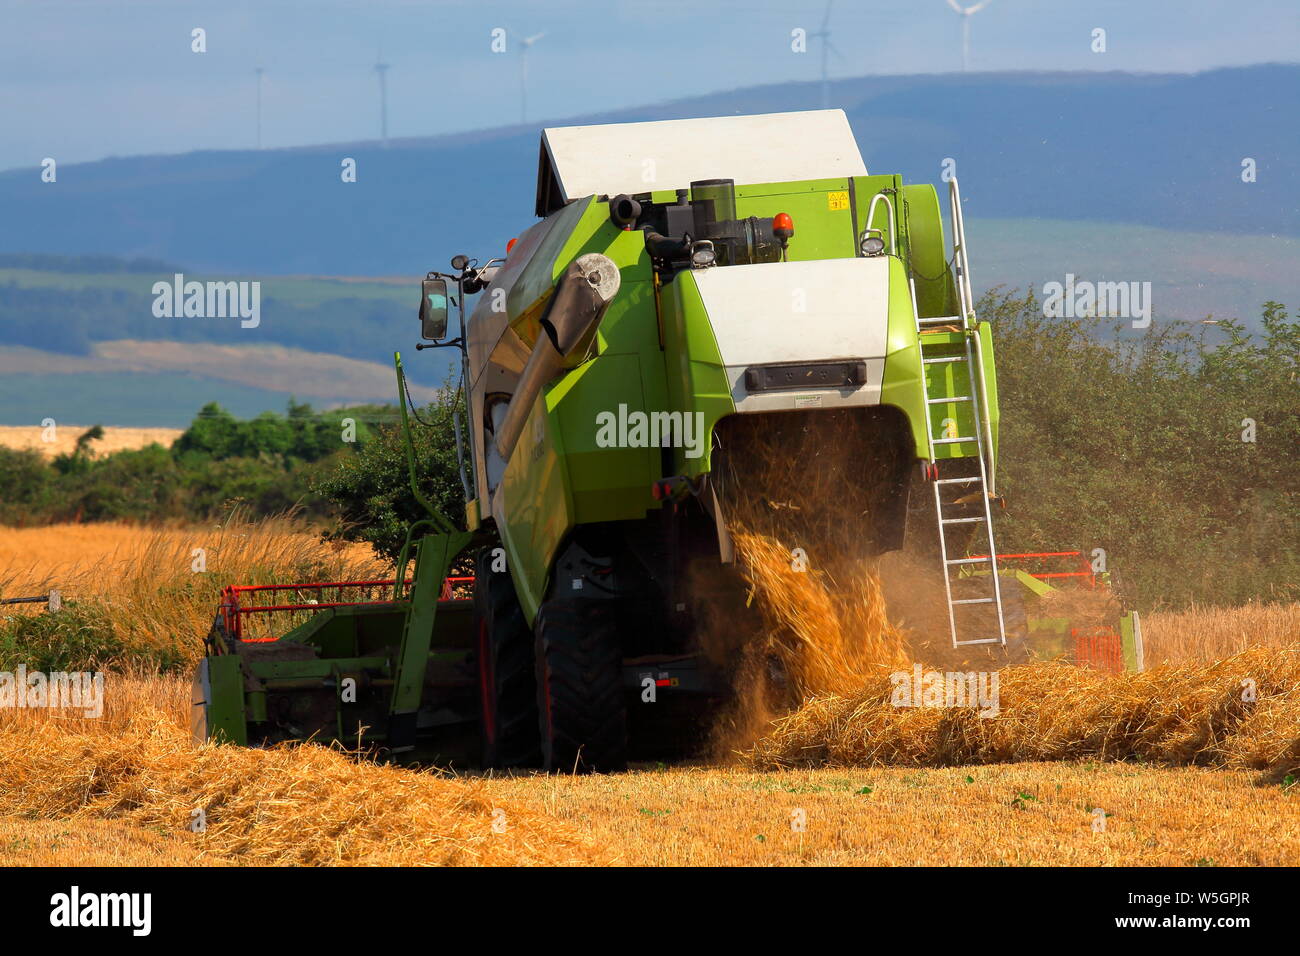 Una Mietitrebbia Harvester Works modo esso intorno ad un piccolo campo di campagna la raccolta di questi anni il raccolto di grano rendendo il lavoro a breve di questo anni raccolto. Foto Stock